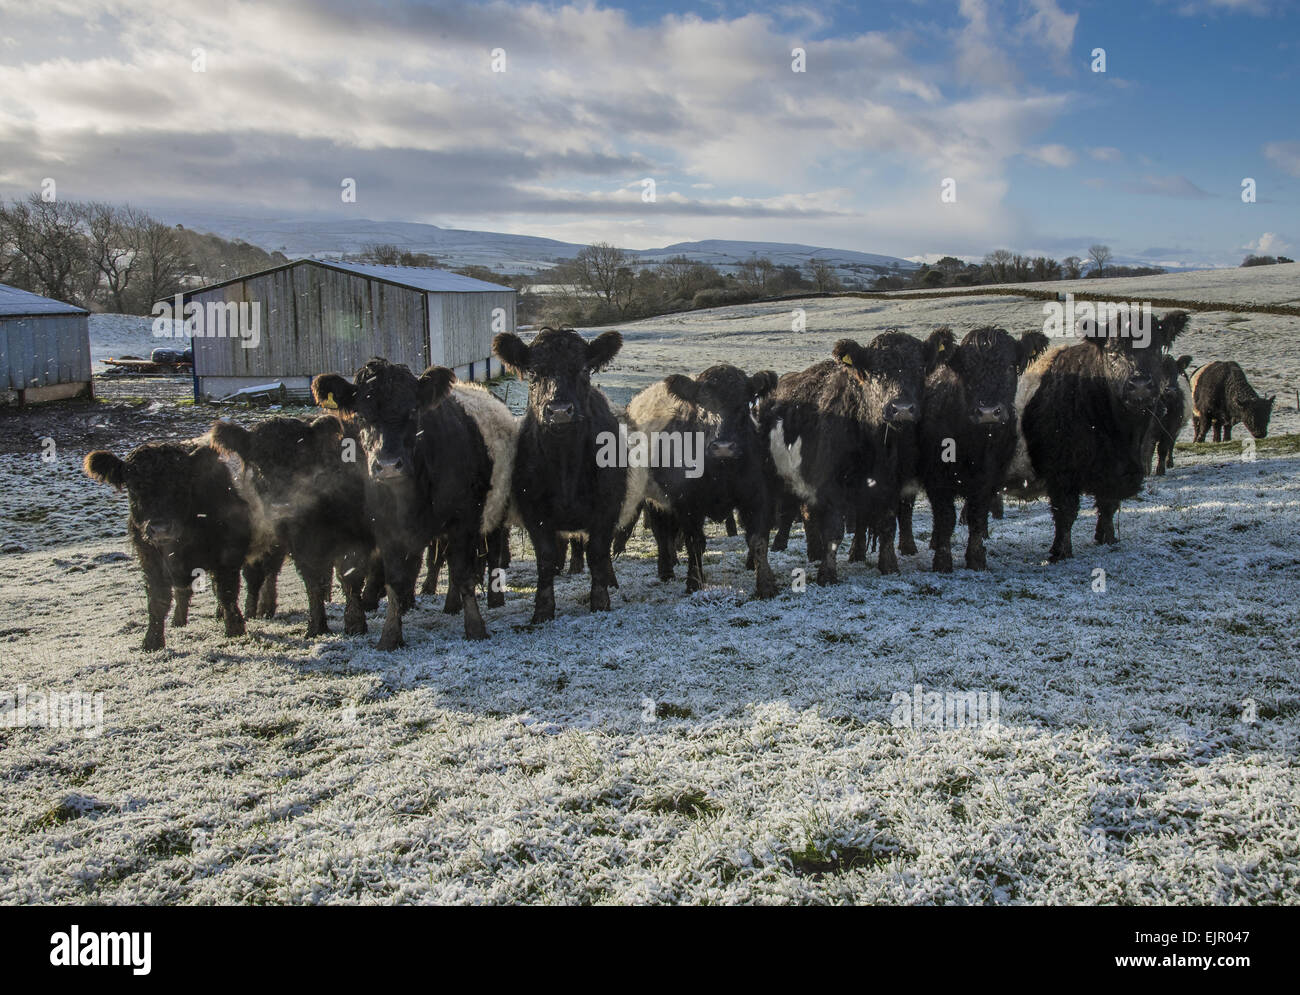 Les bovins domestiques, à ceinture troupeau de bovins, debout dans les pâturages couverts de givre, Brough, Kirkby Stephen, Cumbria, Angleterre, Décembre Banque D'Images